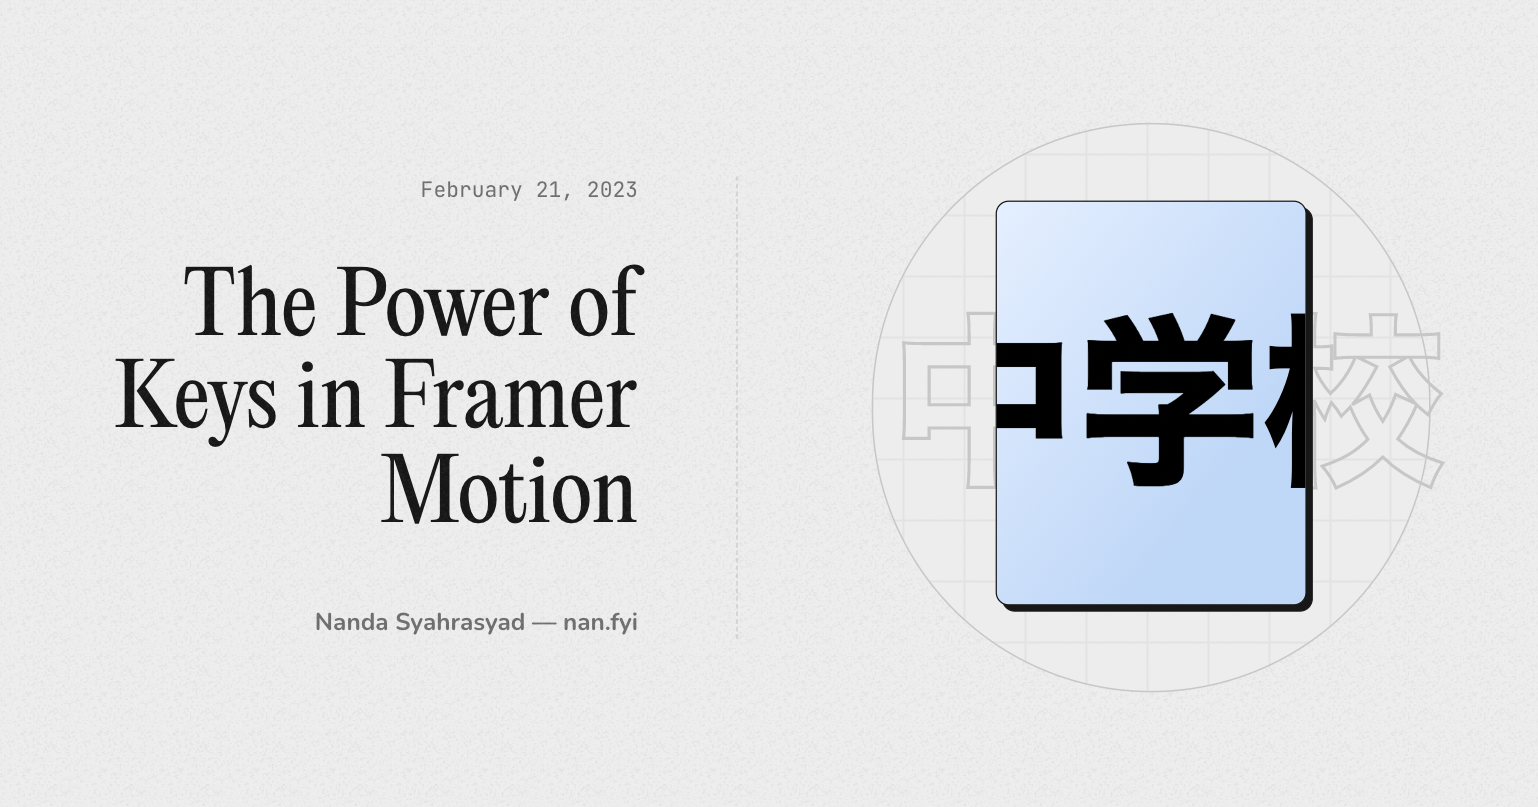 The Power of Keys in Framer Motion